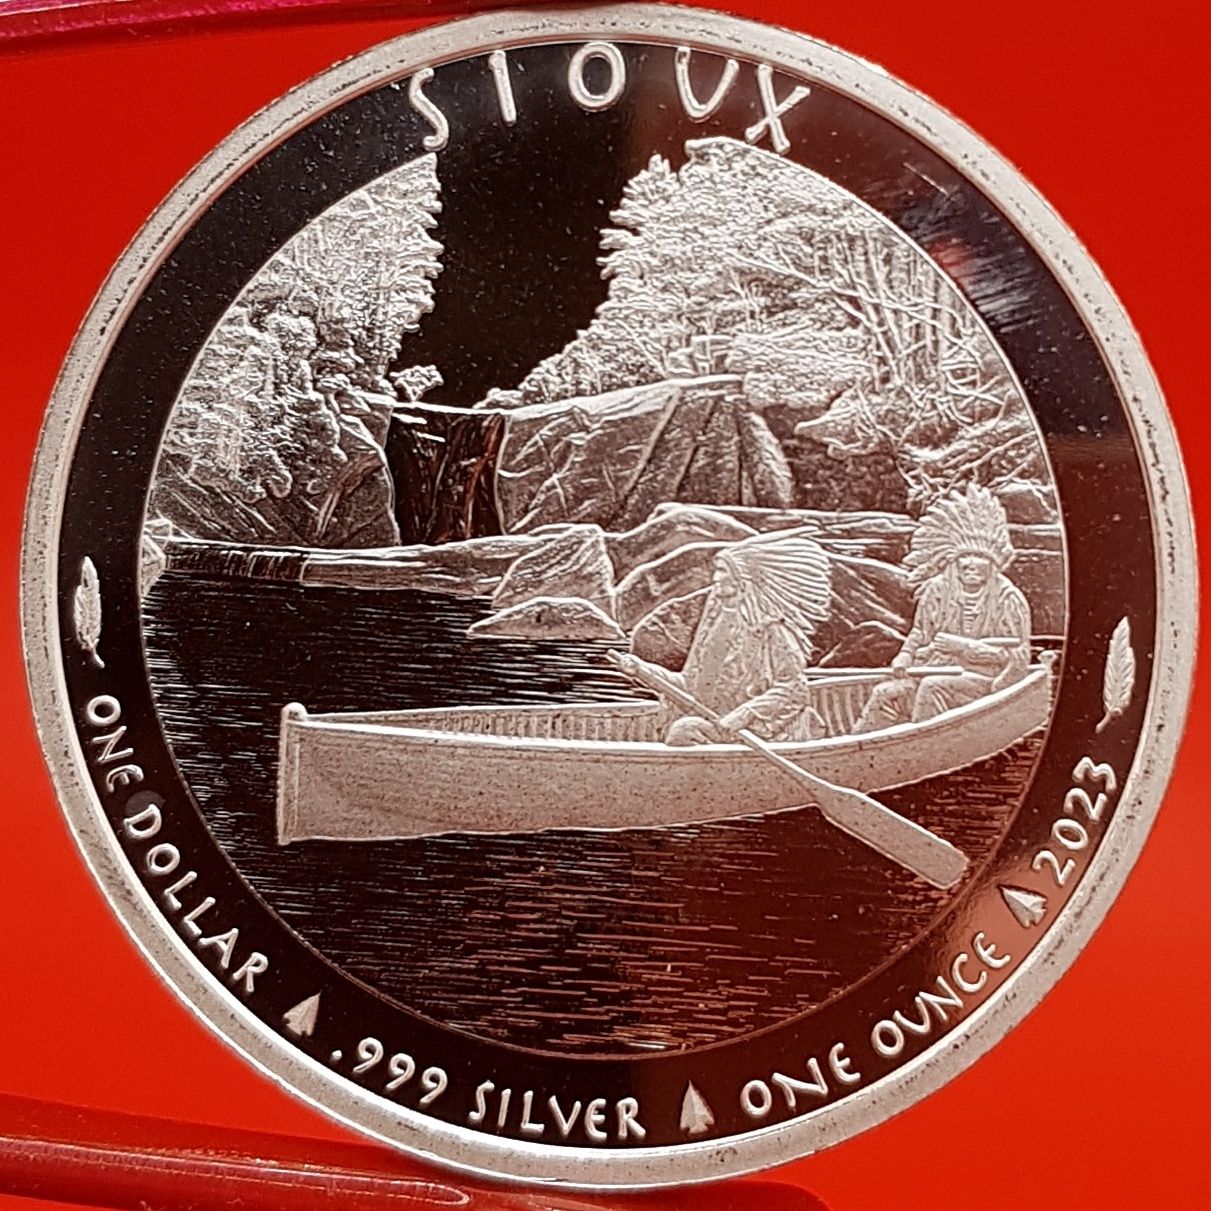 Razboinici de Demult monede argint lingou 999